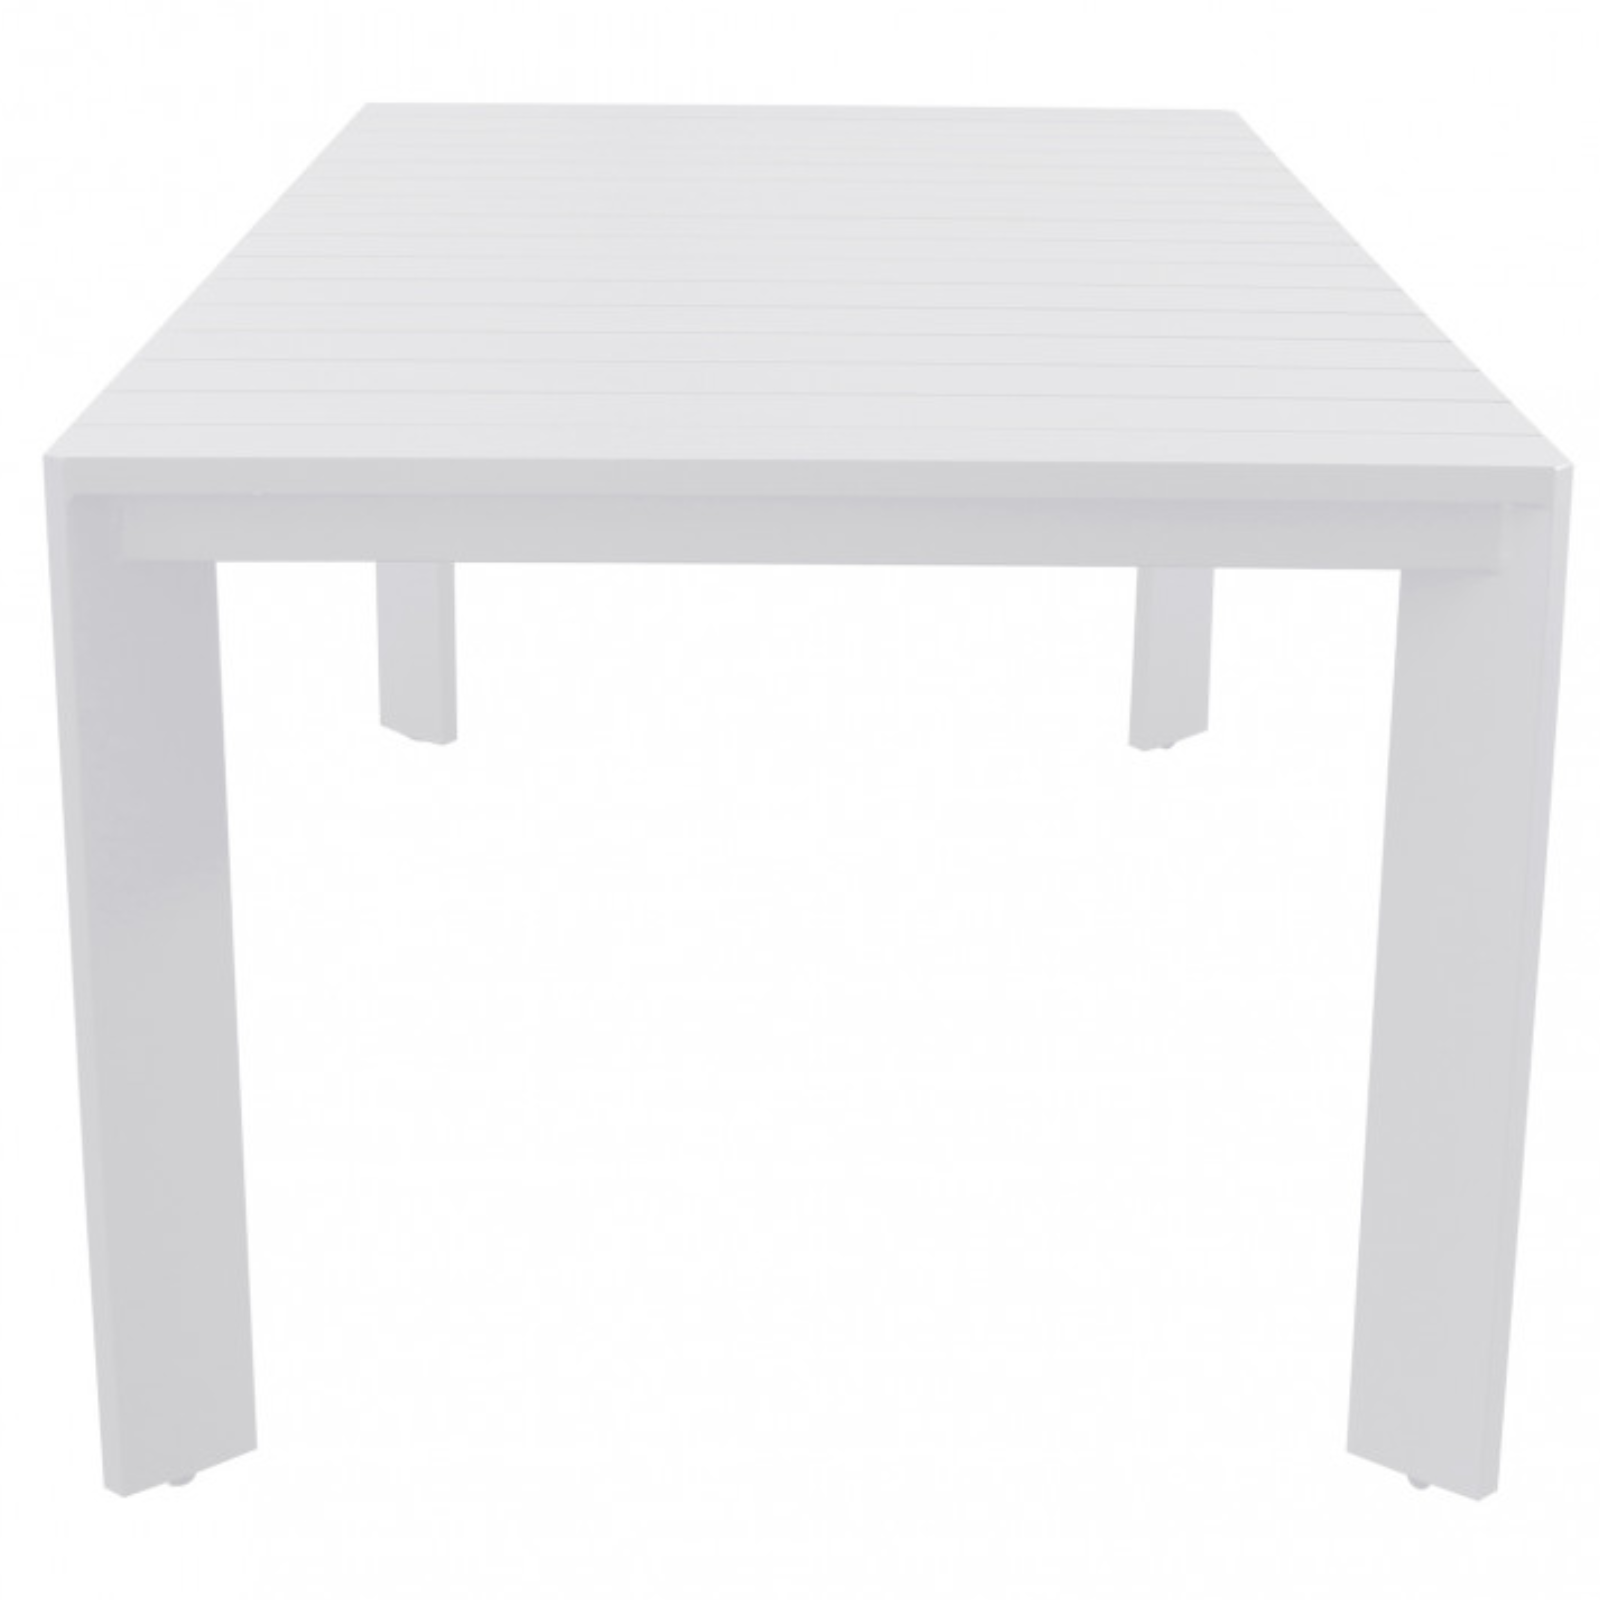 Tavolo rettangolare 200x100 in alluminio bianco da interno o esterno - Connec